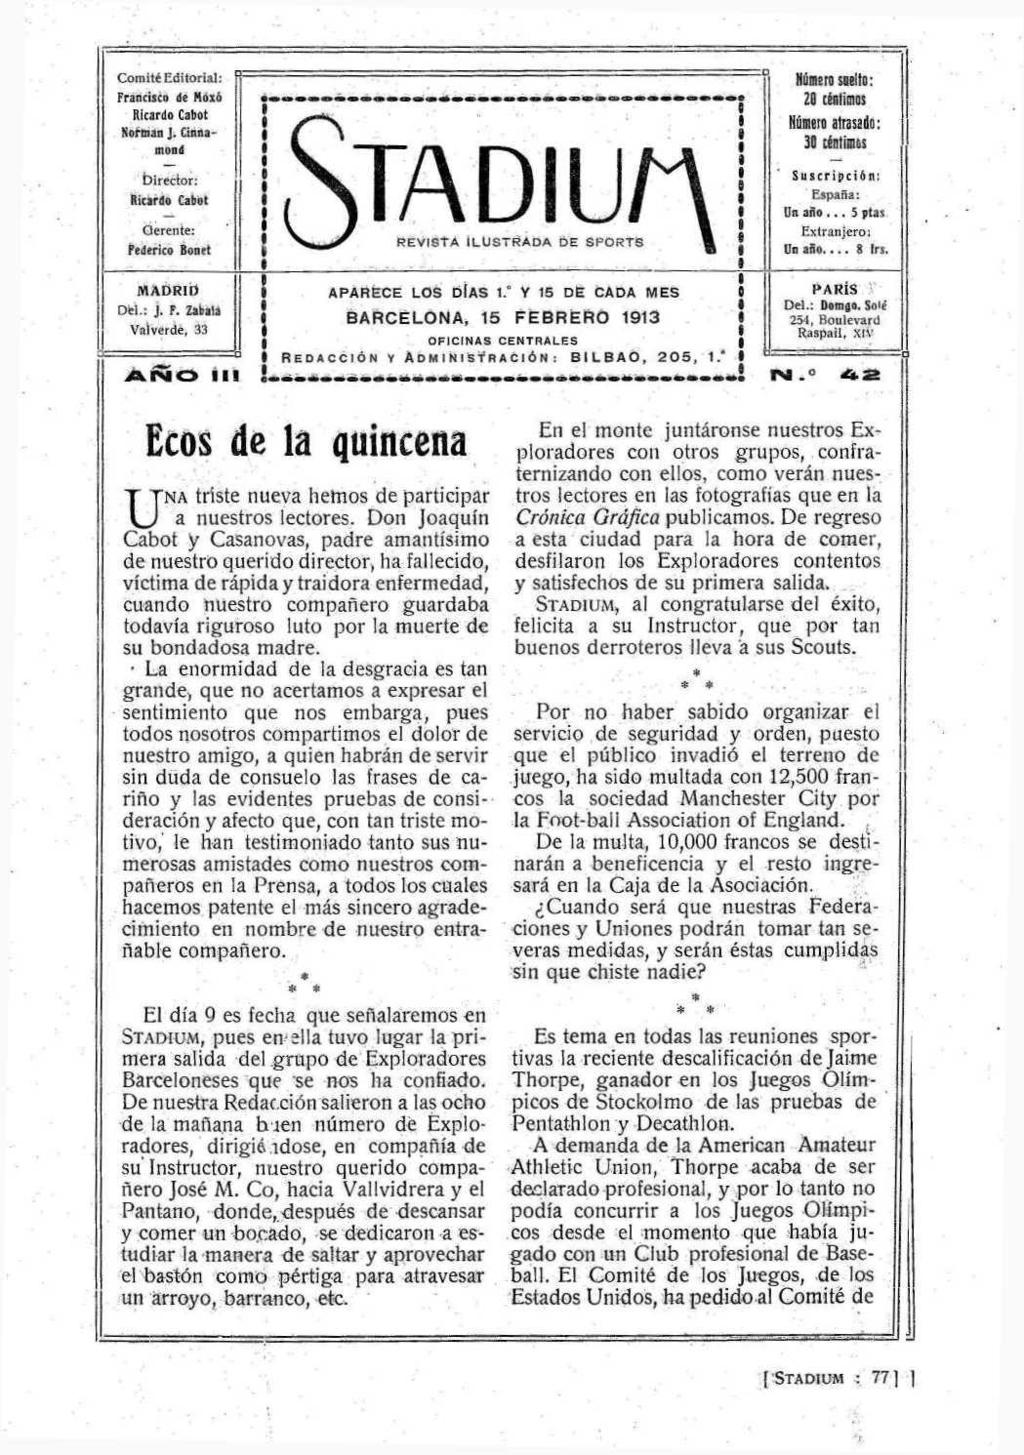 Coraití Editorial: Francisco de Moió Rlcardo Cabot Norman J.